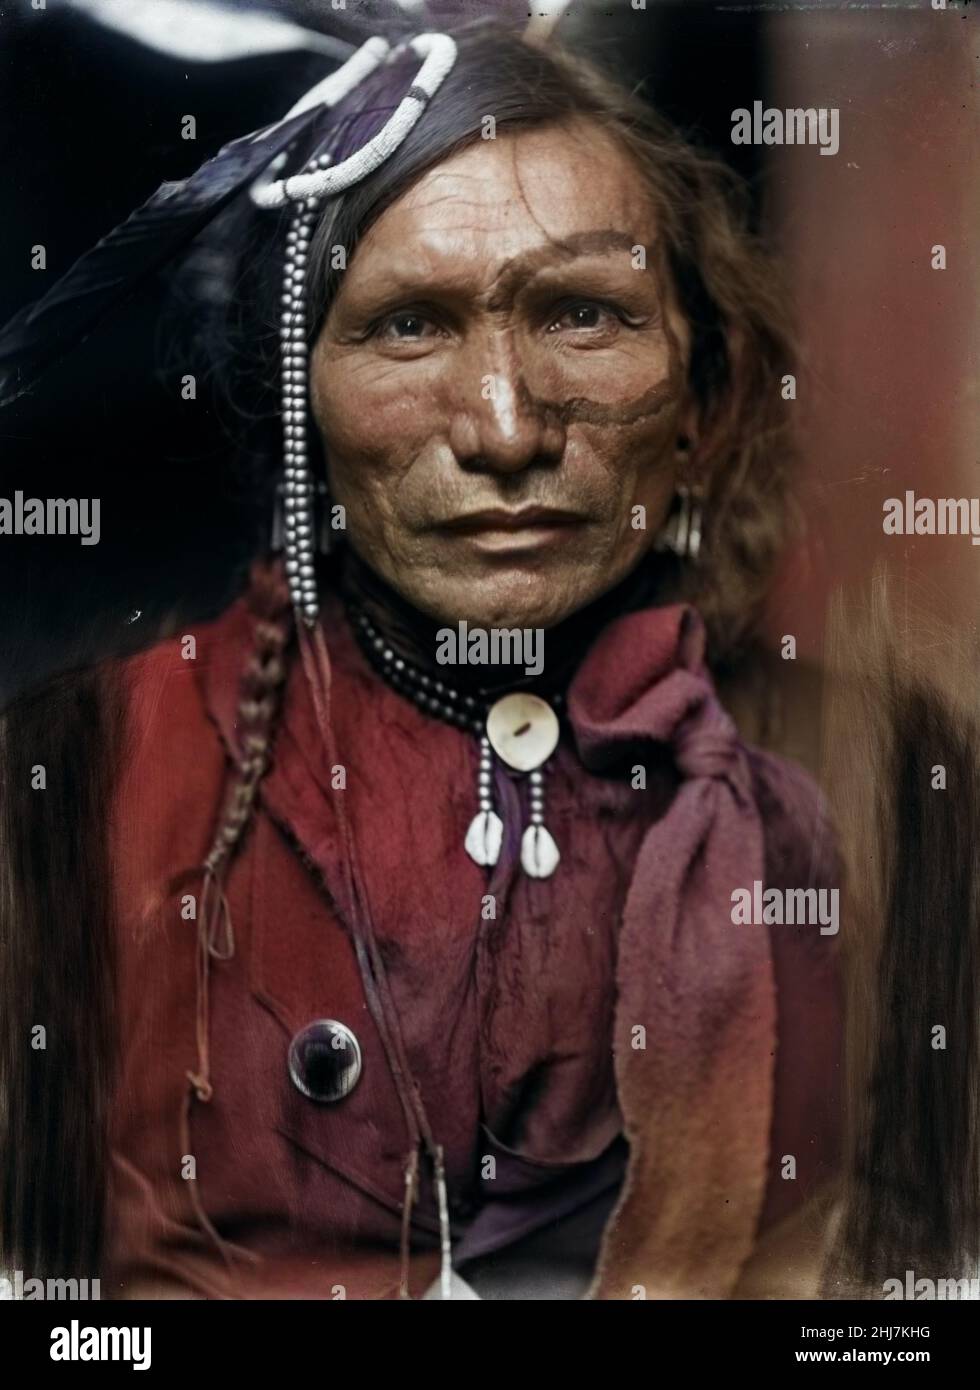 Iron White man, ein Sioux-Indianer aus Buffalo Bills Wild West Show, c 1900. Käsebier, Gertrude, 1852-1934, Fotografin. Eingefärbt. Stockfoto